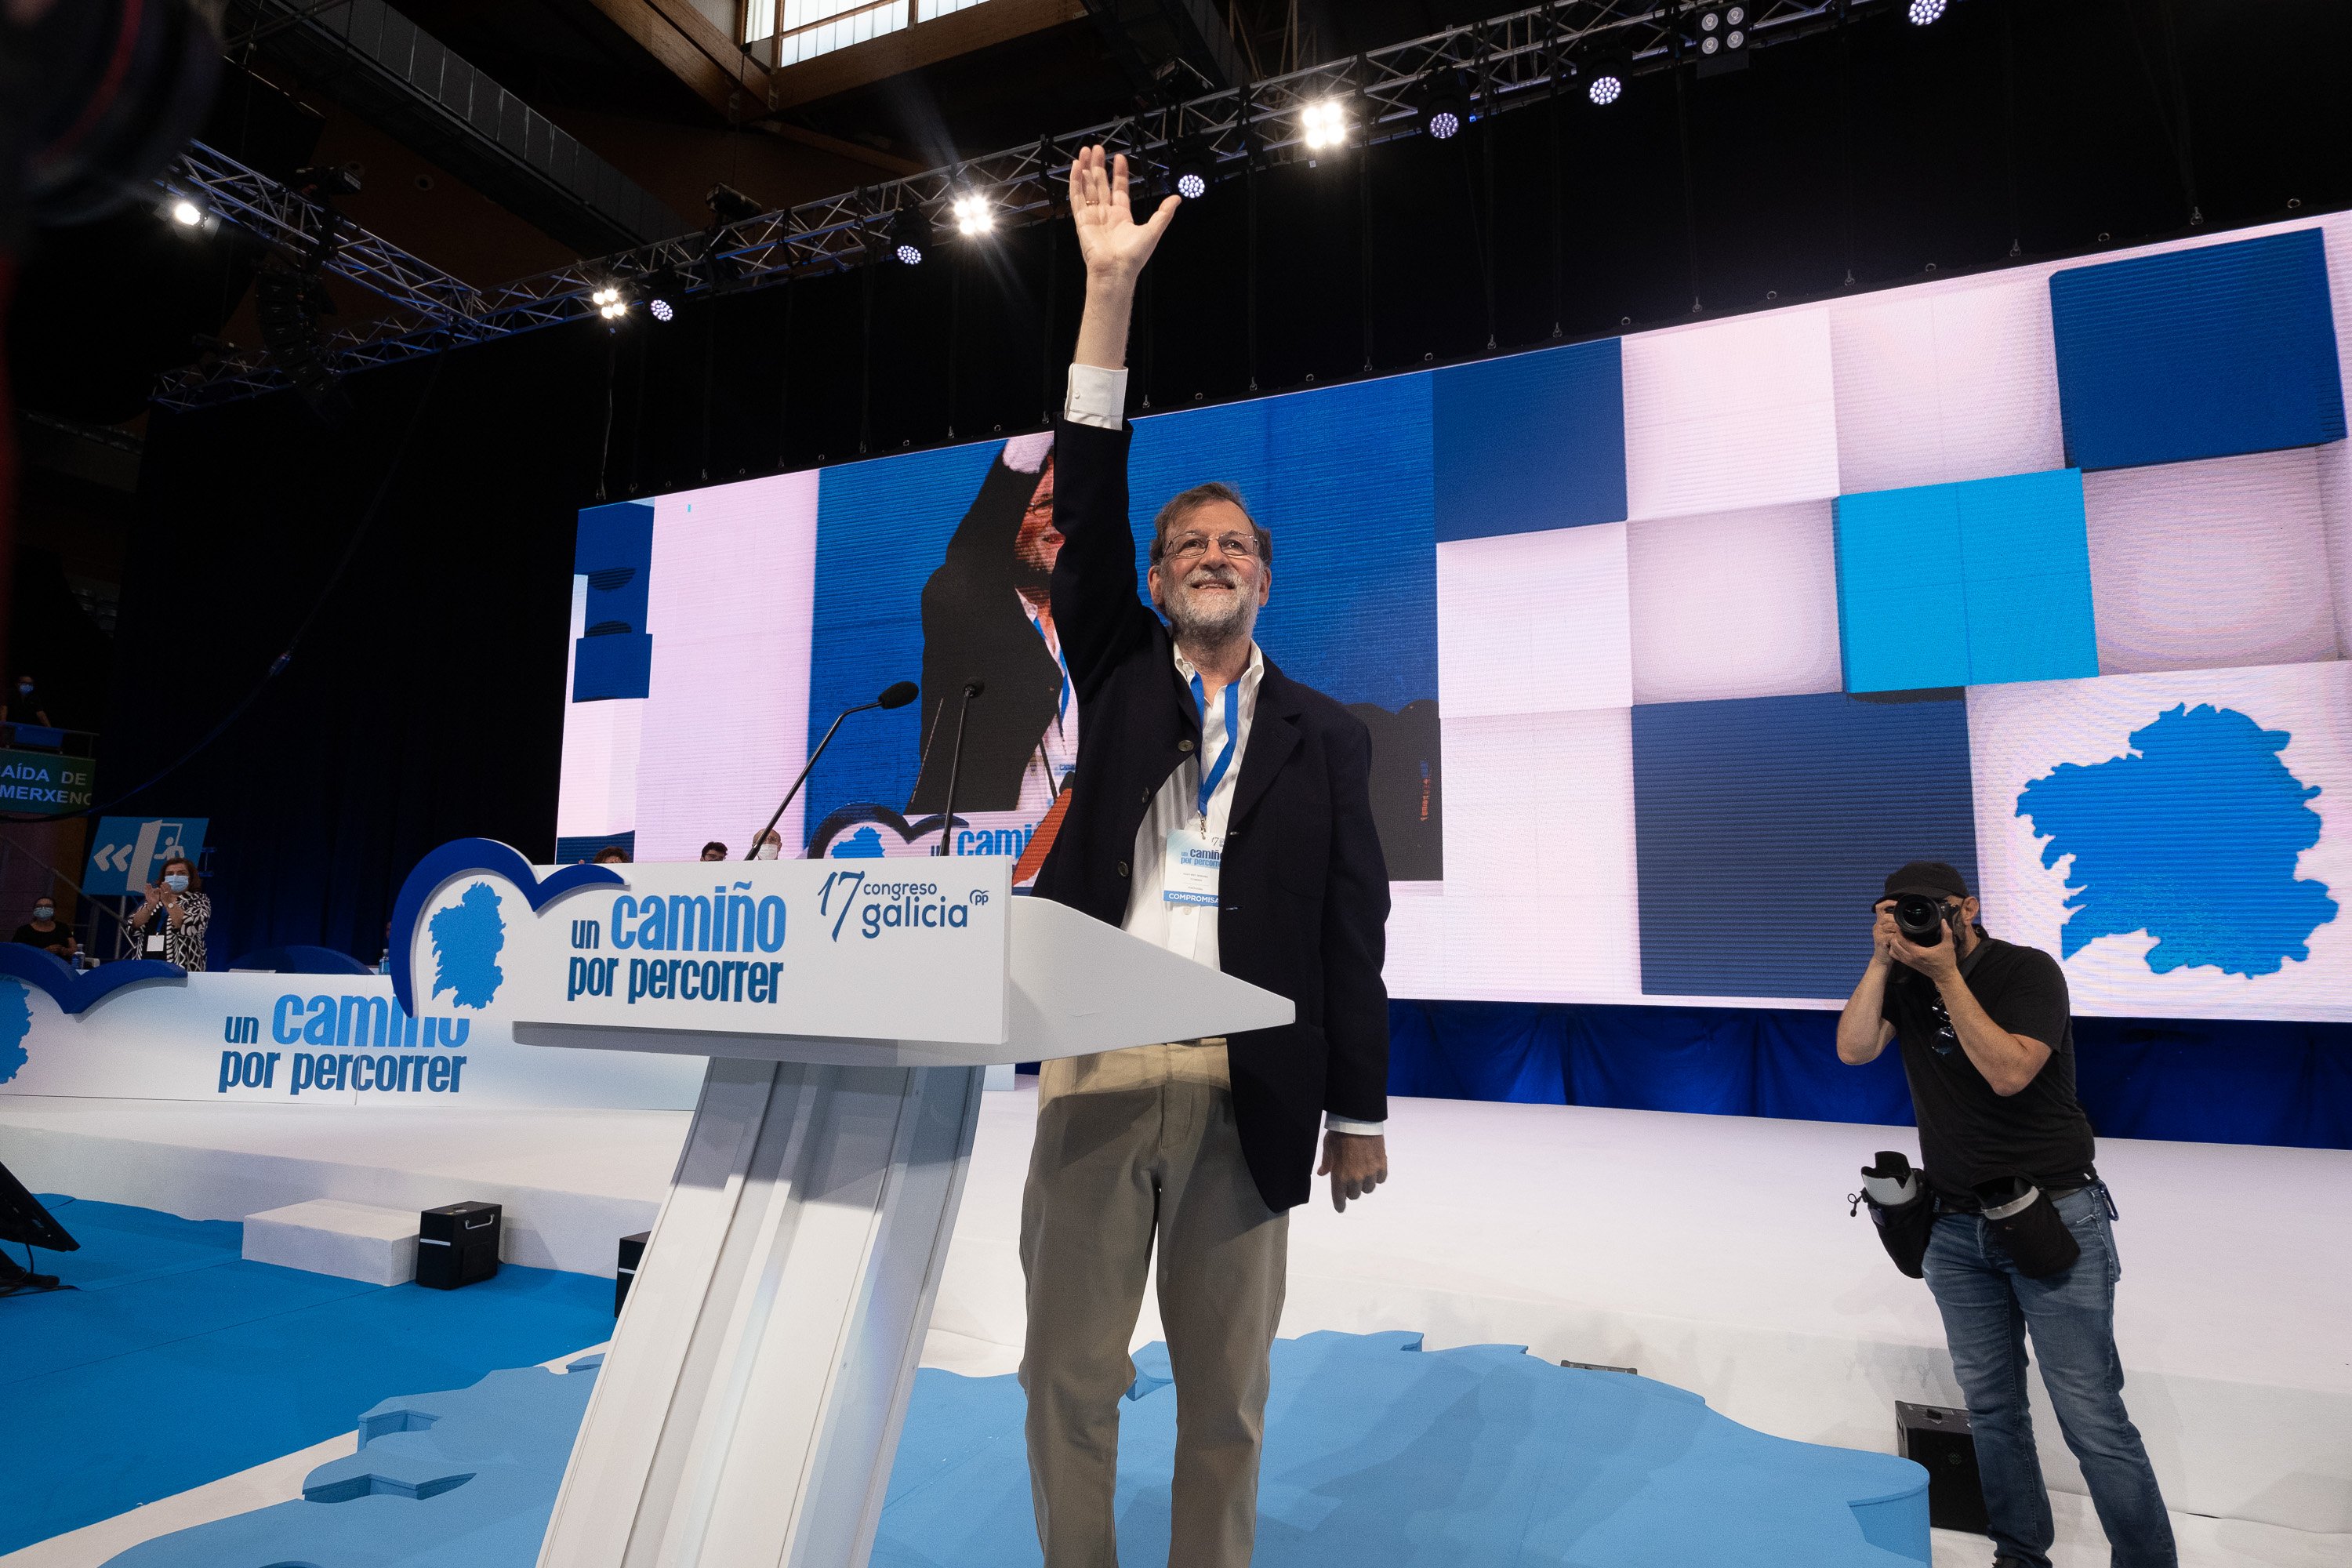 Rajoy carga contra el lenguaje inclusivo: "Hay demasiada patada al diccionario"